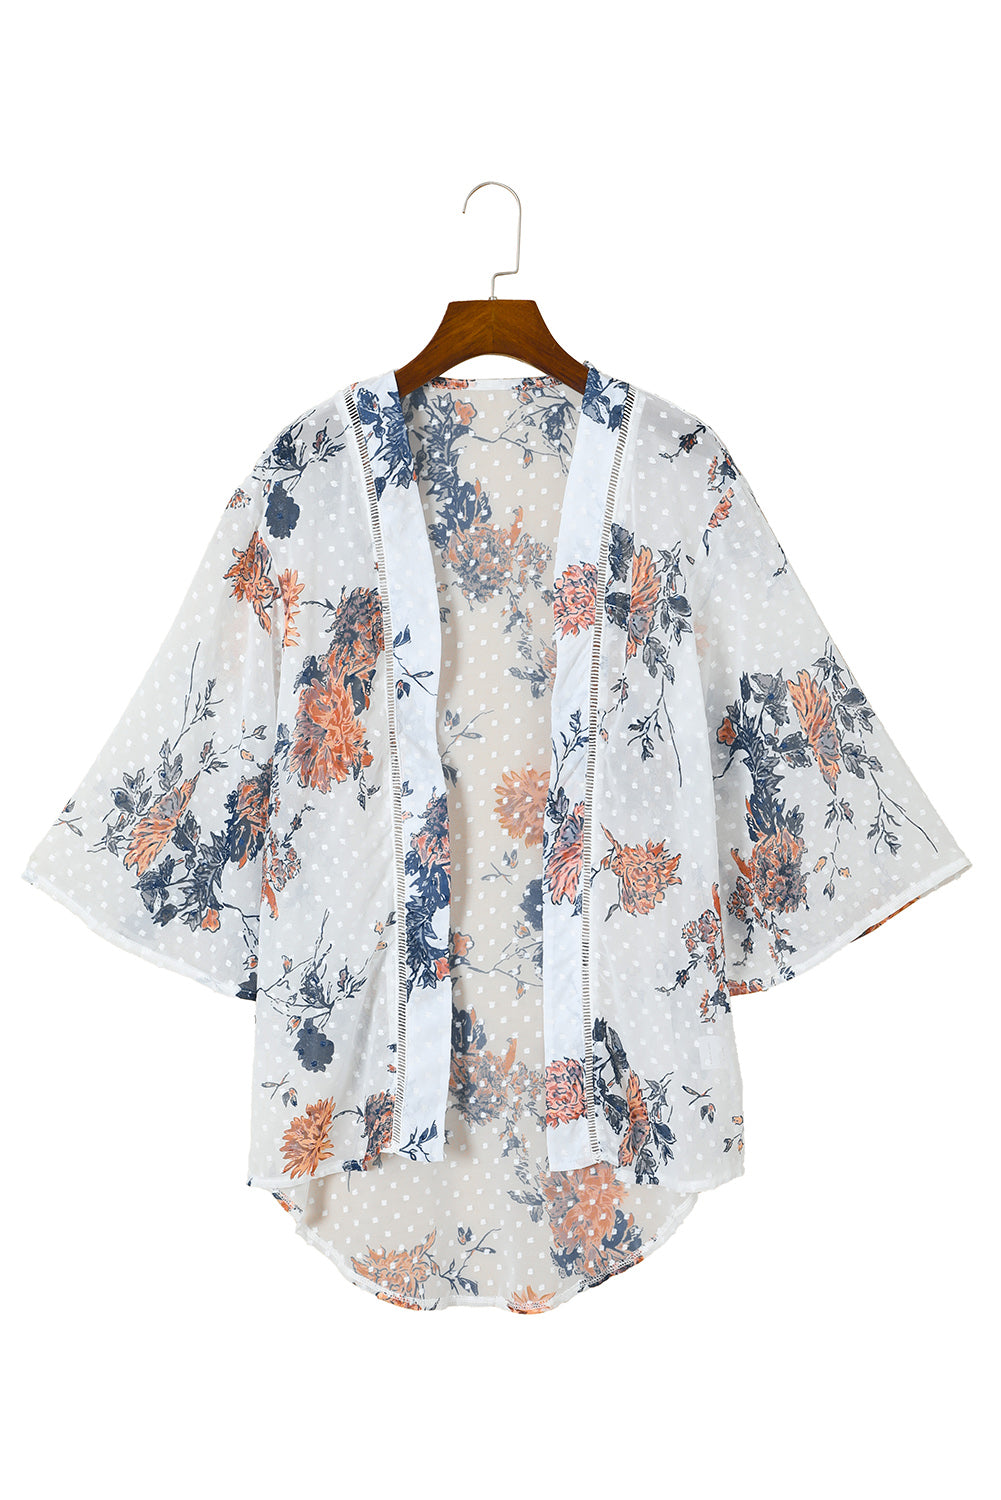 Bijeli kimono s otvorenim zvonastim rukavima s cvjetnim uzorkom sprijeda